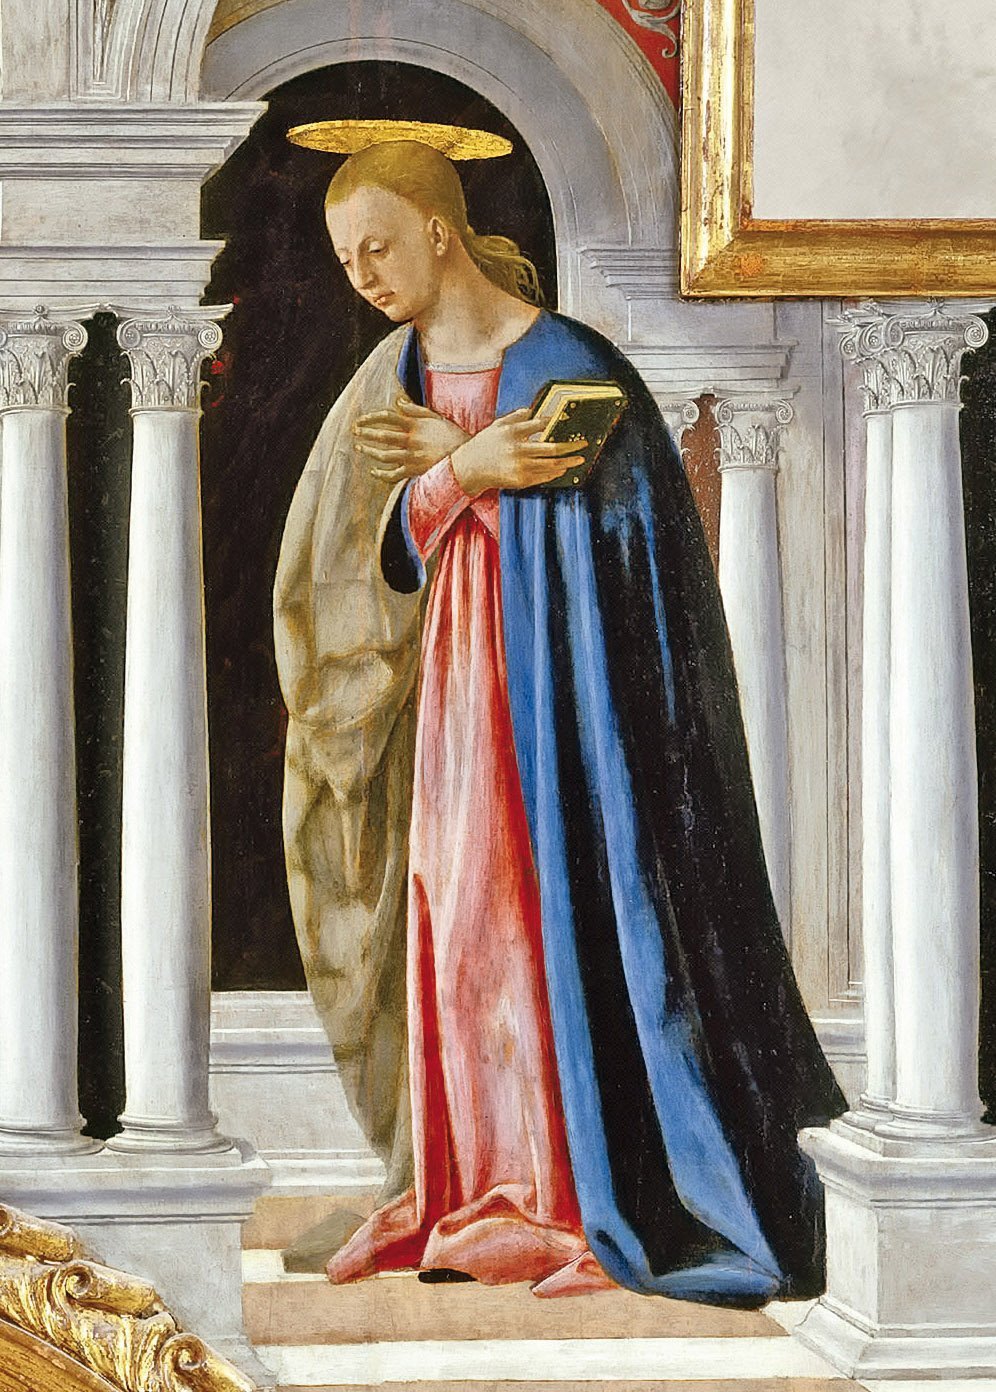 Piero della Francesca, "Annunciation", detail from "Polittico di Sant'Antonio", 1460-1470, Galleria nazionale dell'Umbria, Perugia